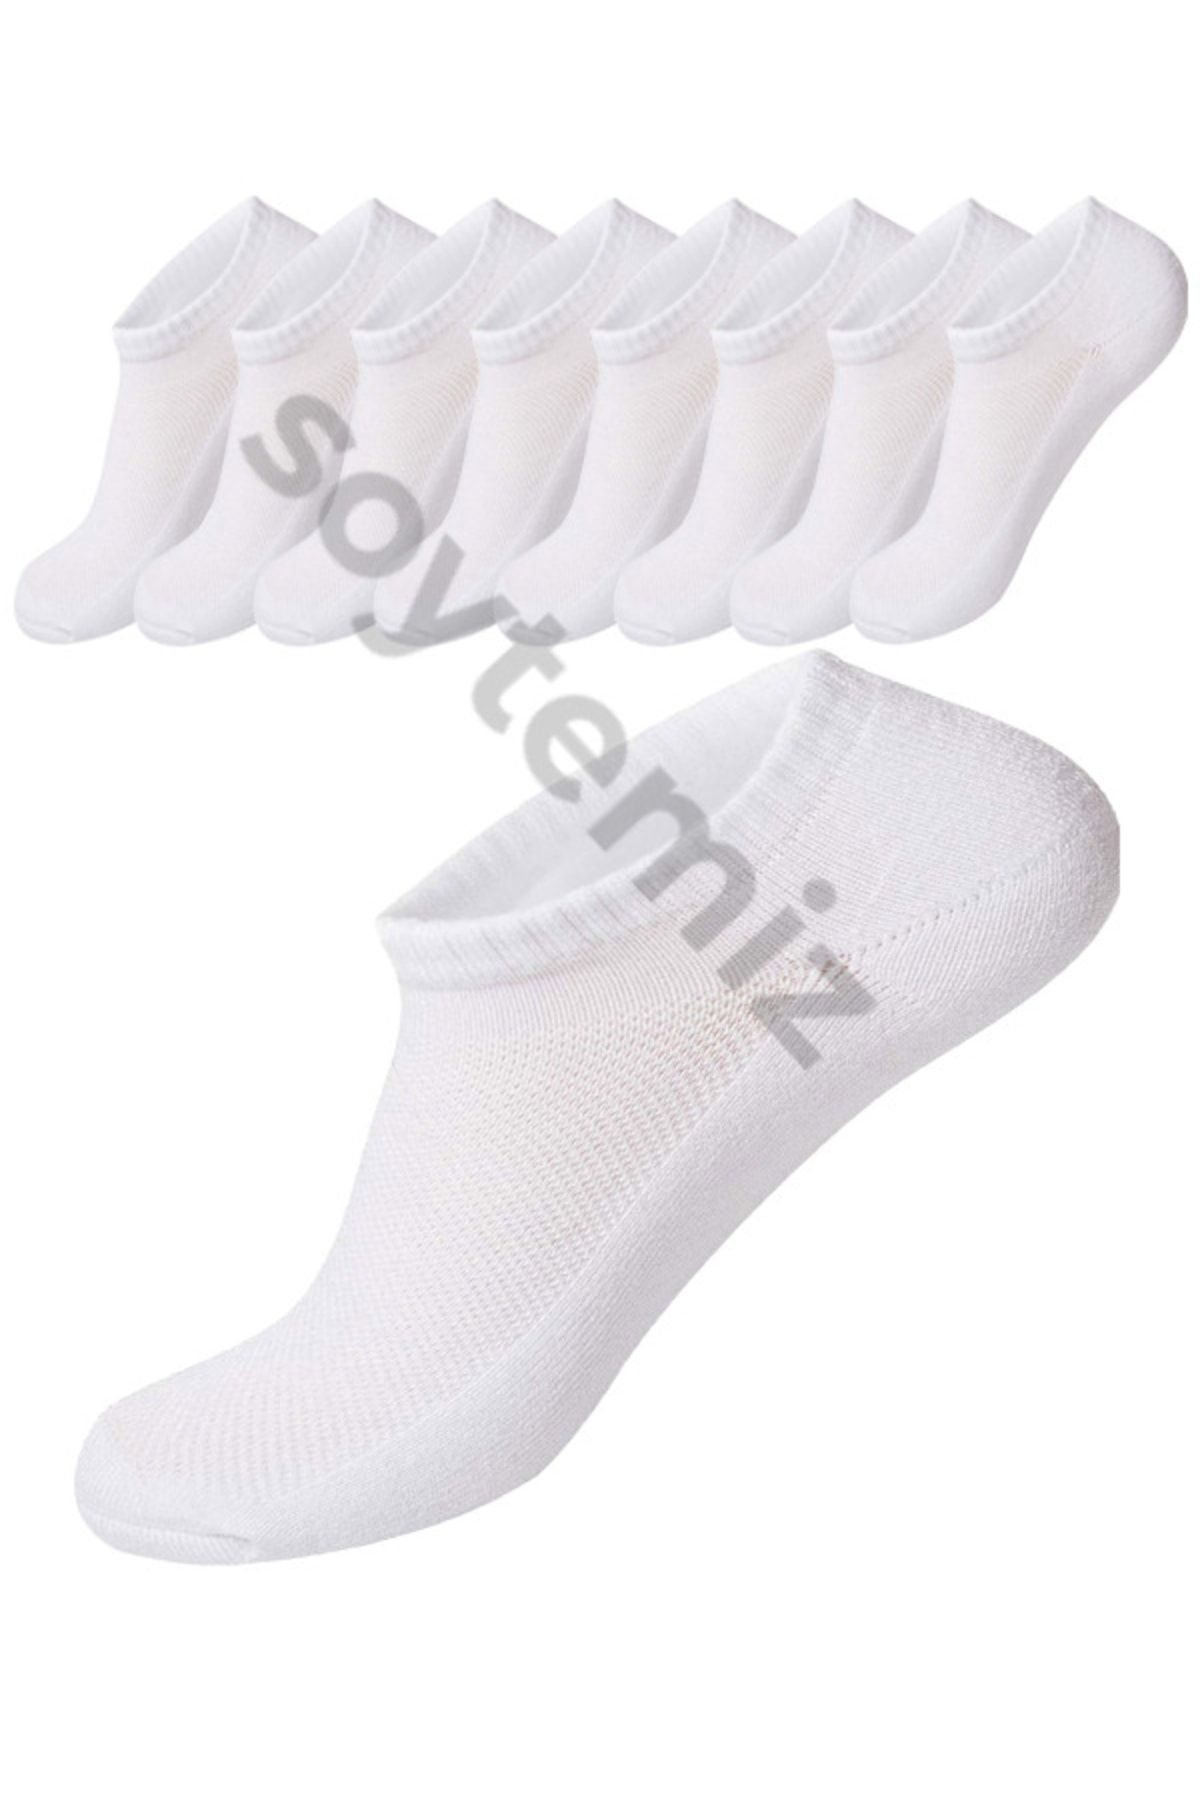 SOYTEMİZ Unisex Beyaz Cotton Sneaker Spor Çorap 8 Çift